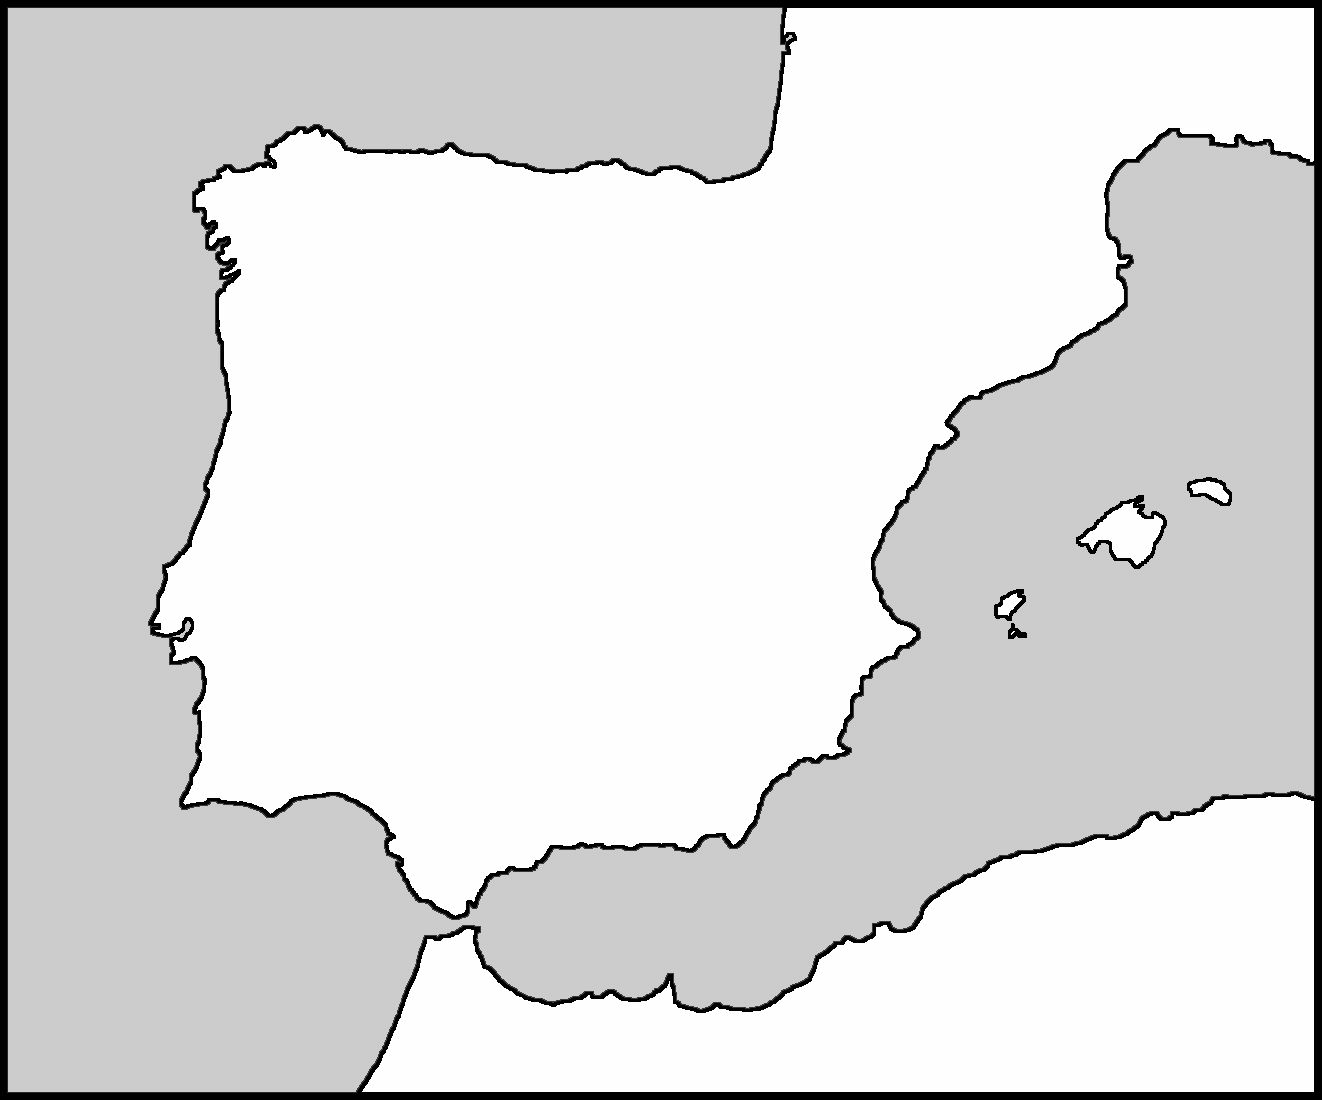 http://www.islamicspain.tv/For-Teachers/maps/Spain%20Blank%20Outline.jpg